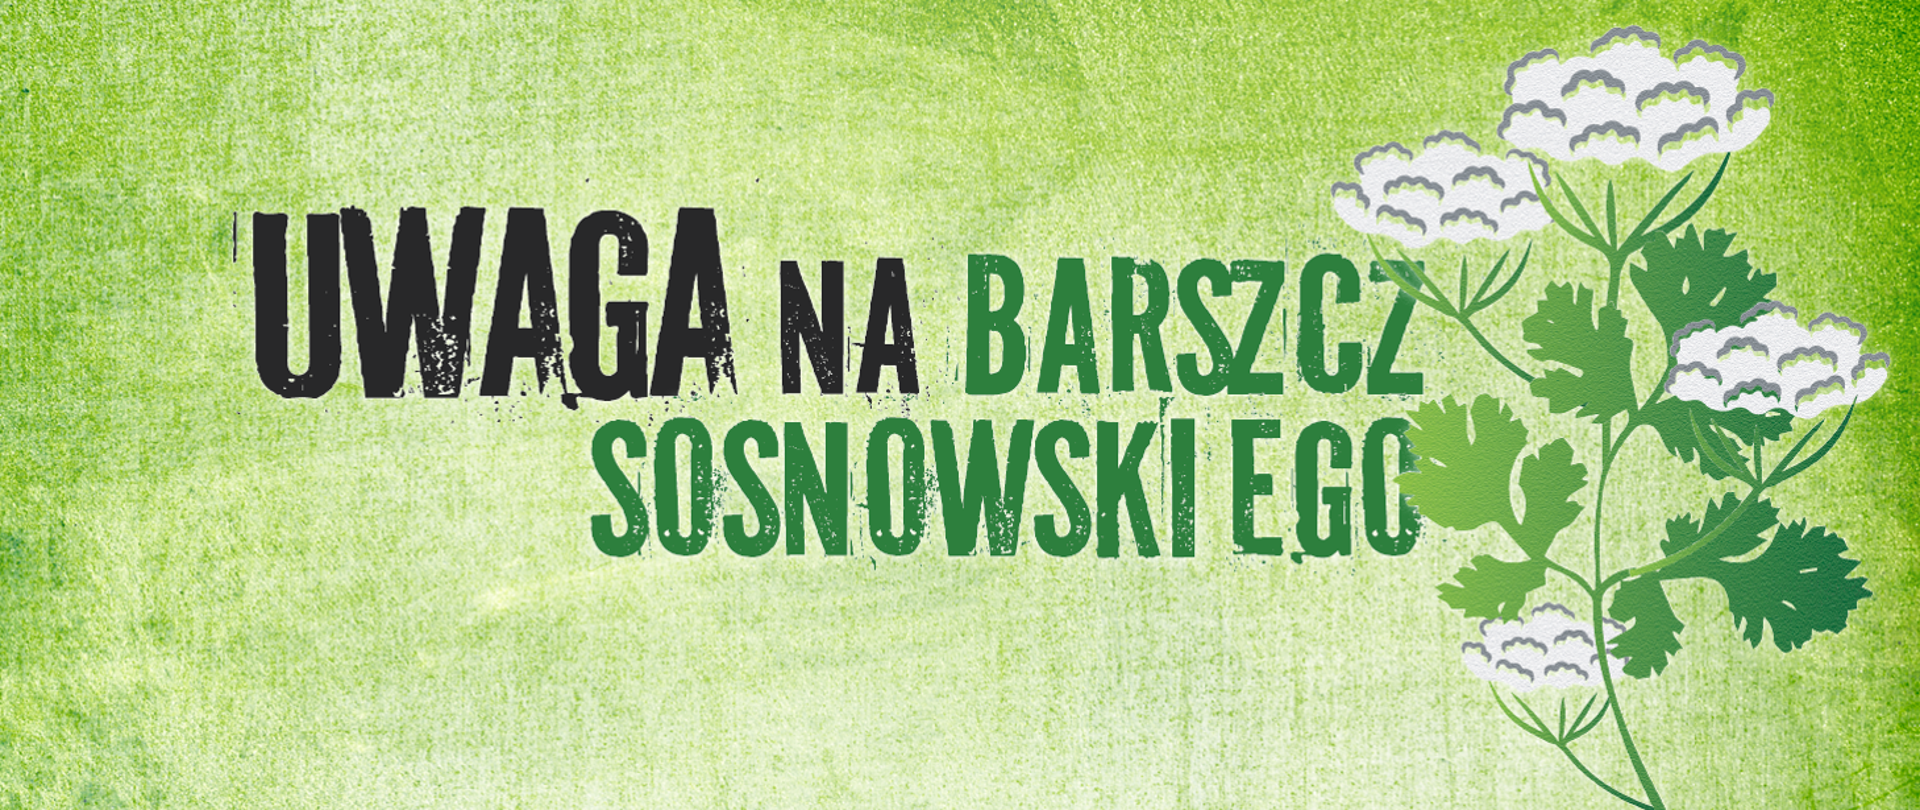 barszcz_sosnkowskiego